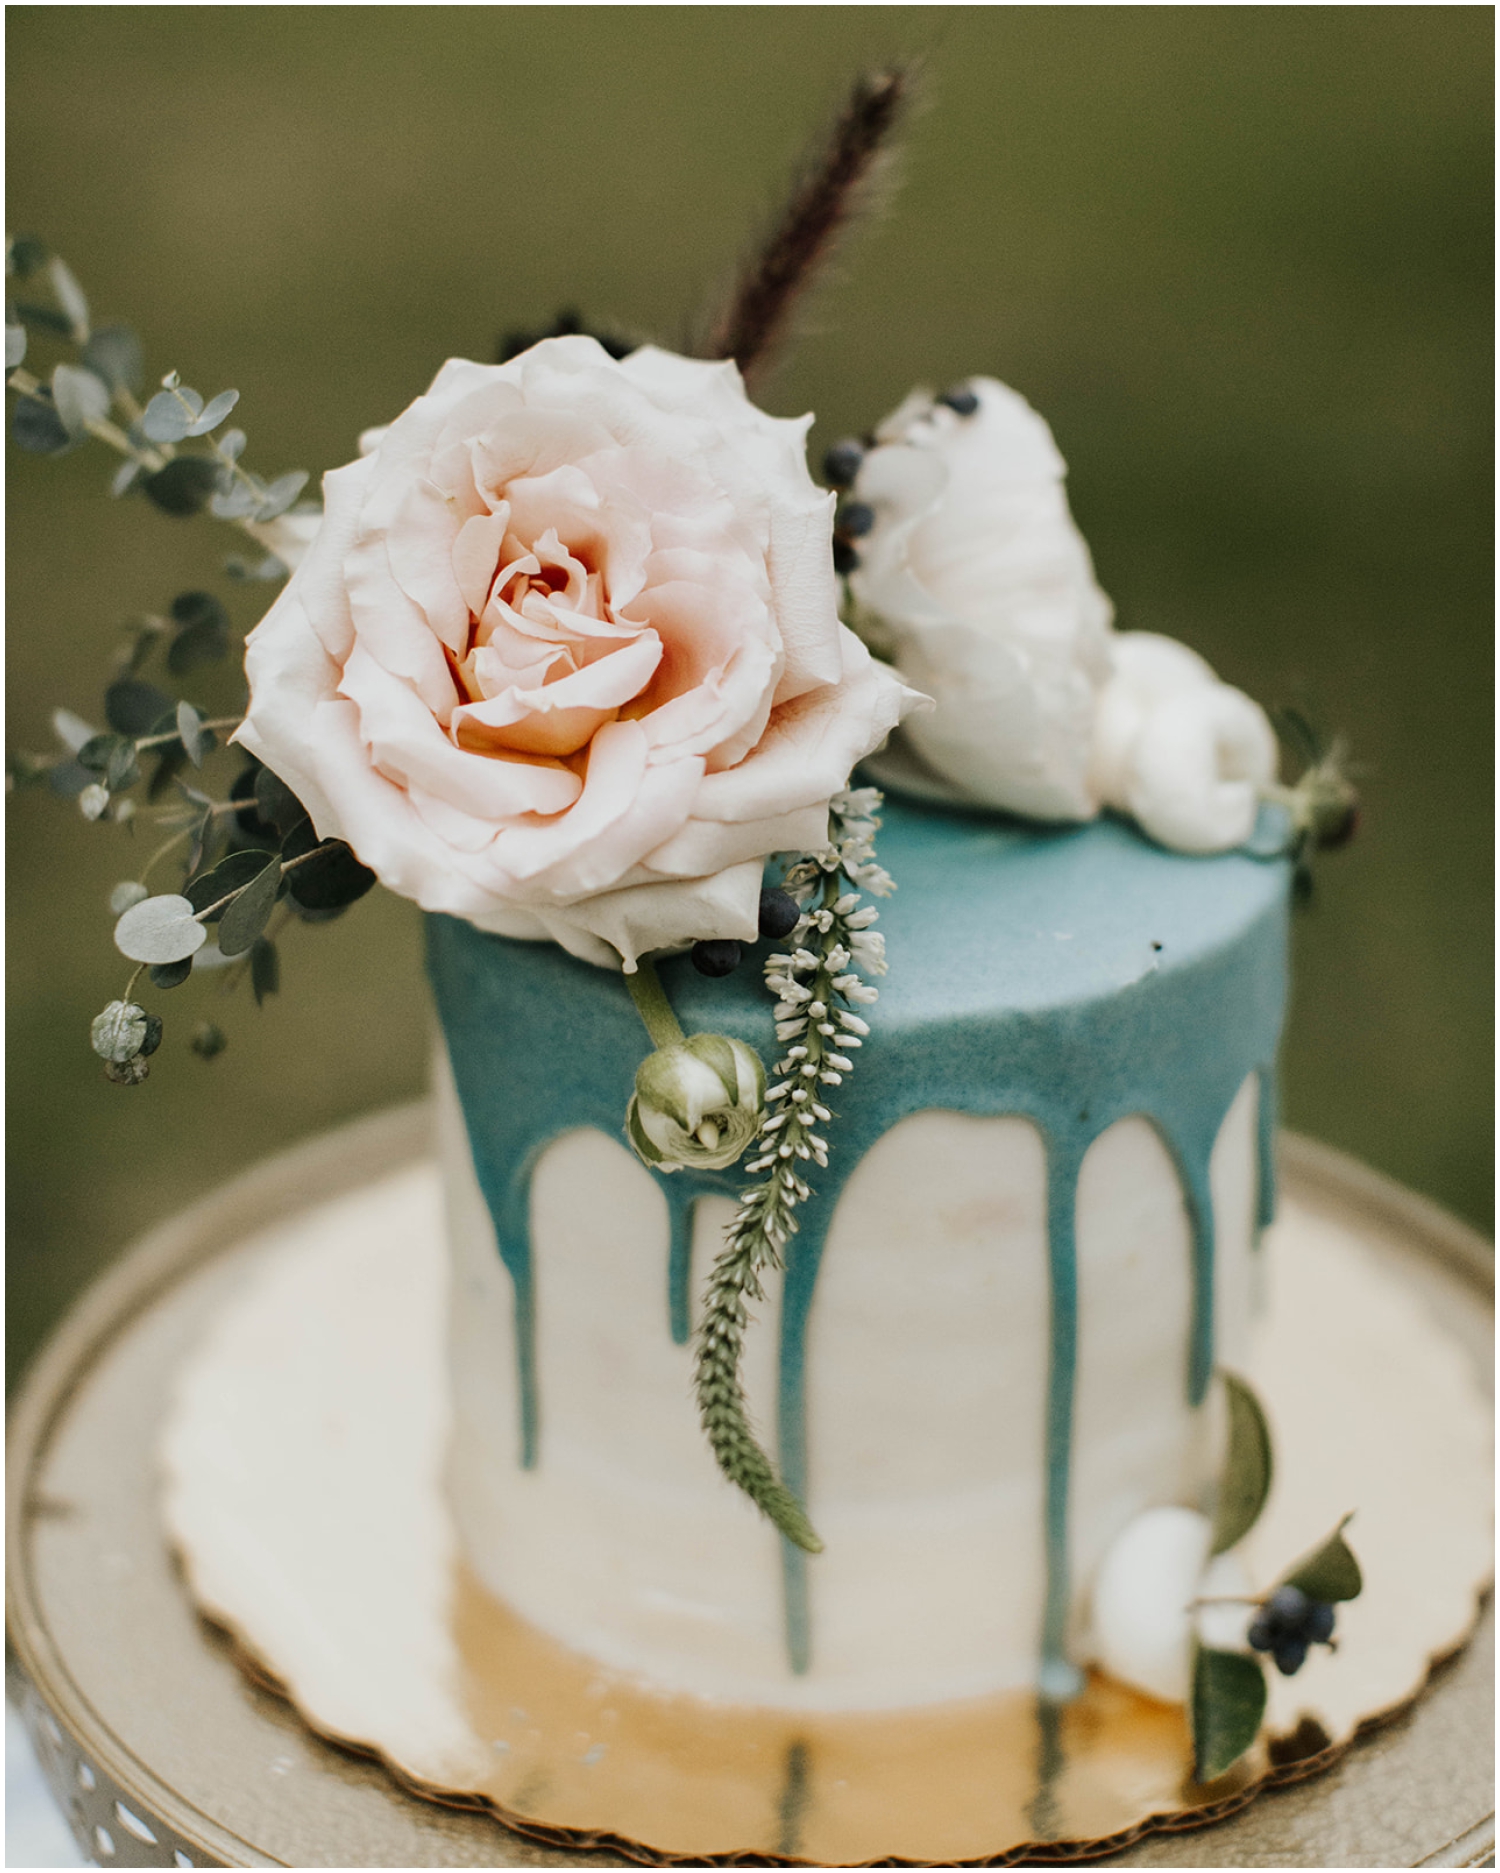  wedding cake inspiration 